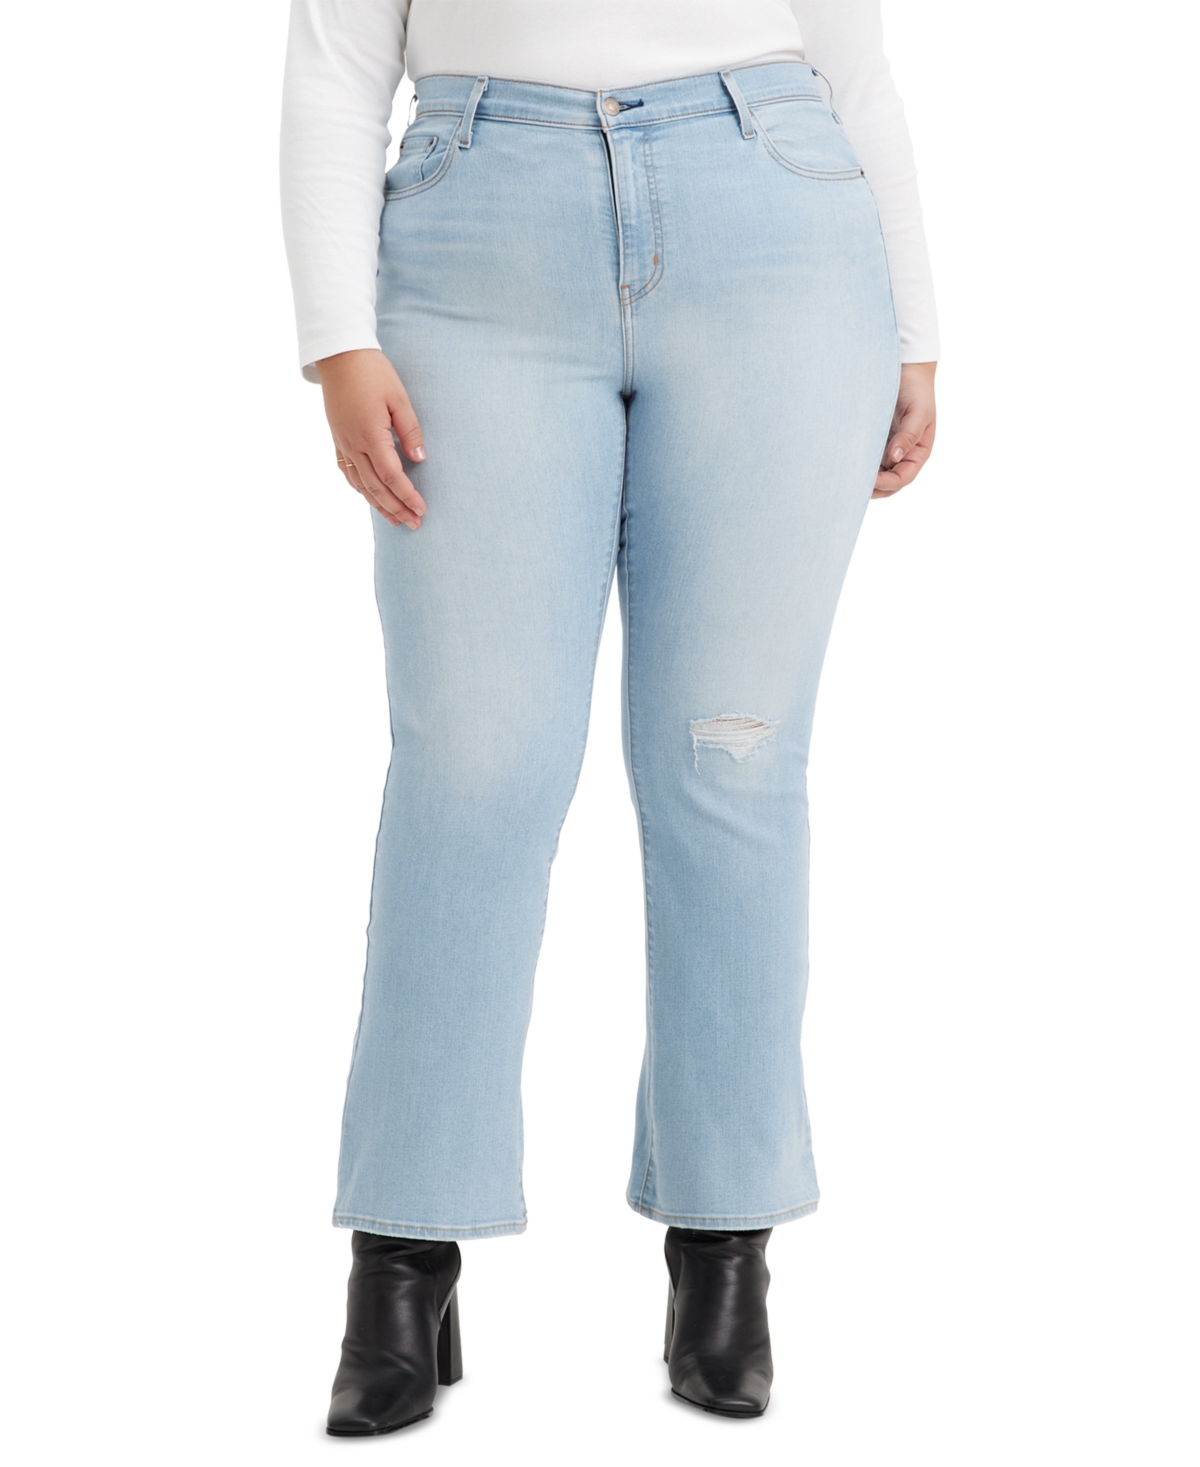 Levi's Trendy Plus Size 725 High-Rise Bootcut Jeans - Cut It Close